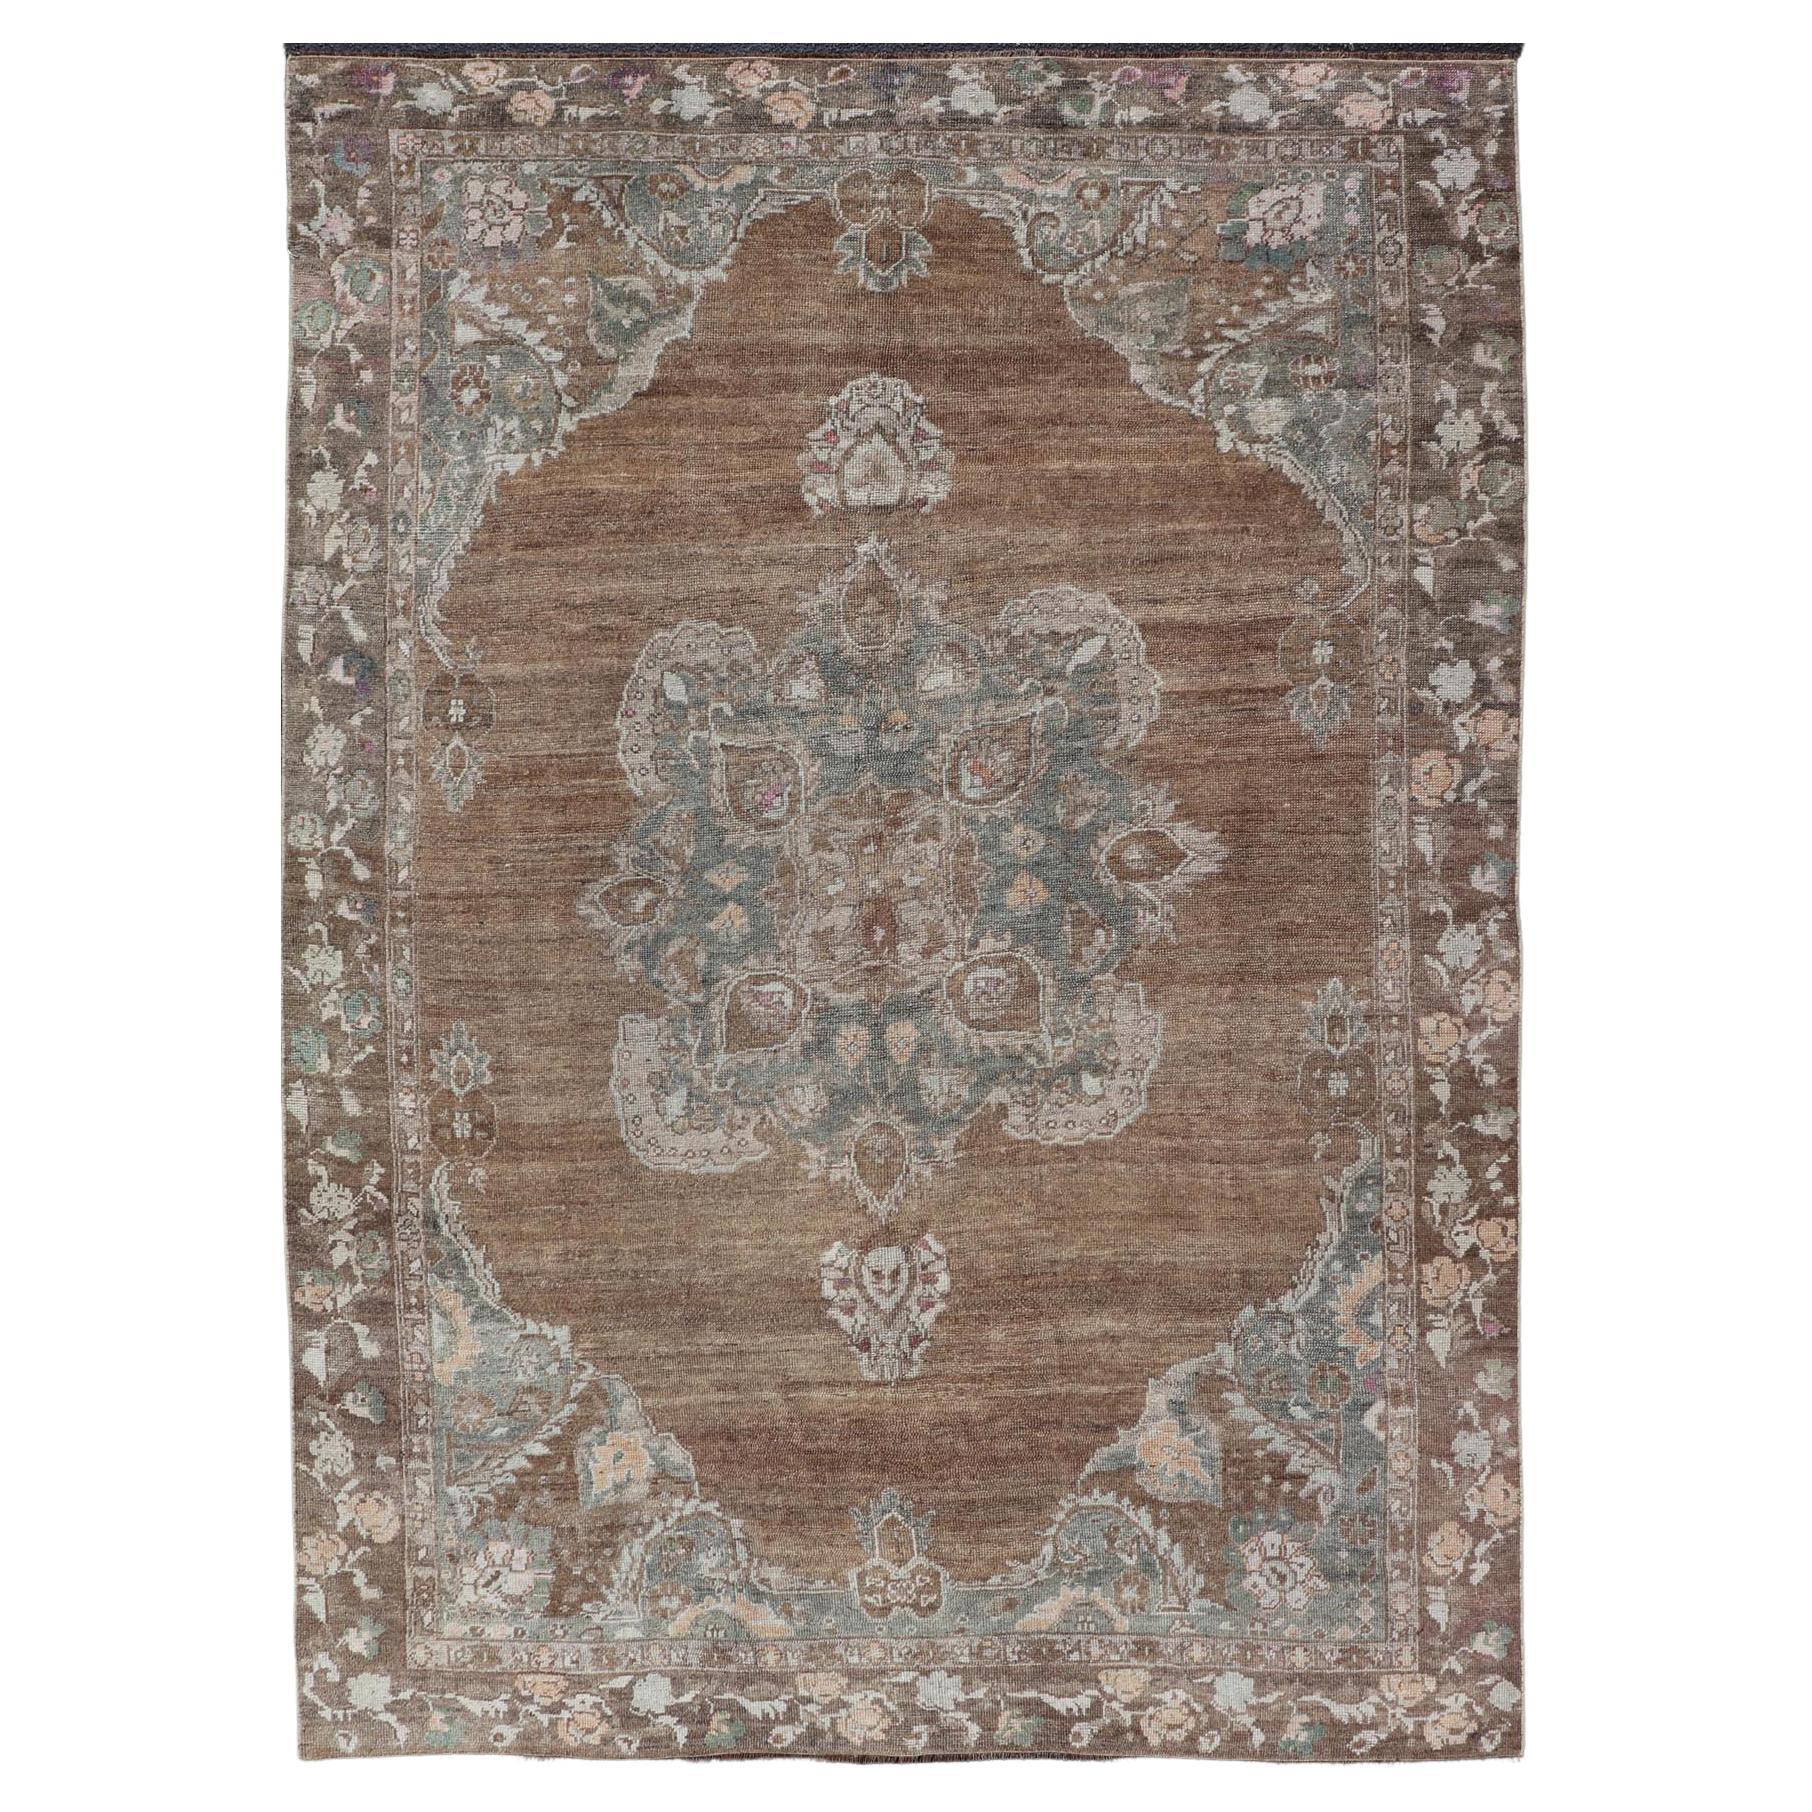 Türkischer Kars-Teppich mit geblümtem Medaillon in Kamel, Tan, Taupe und Grau